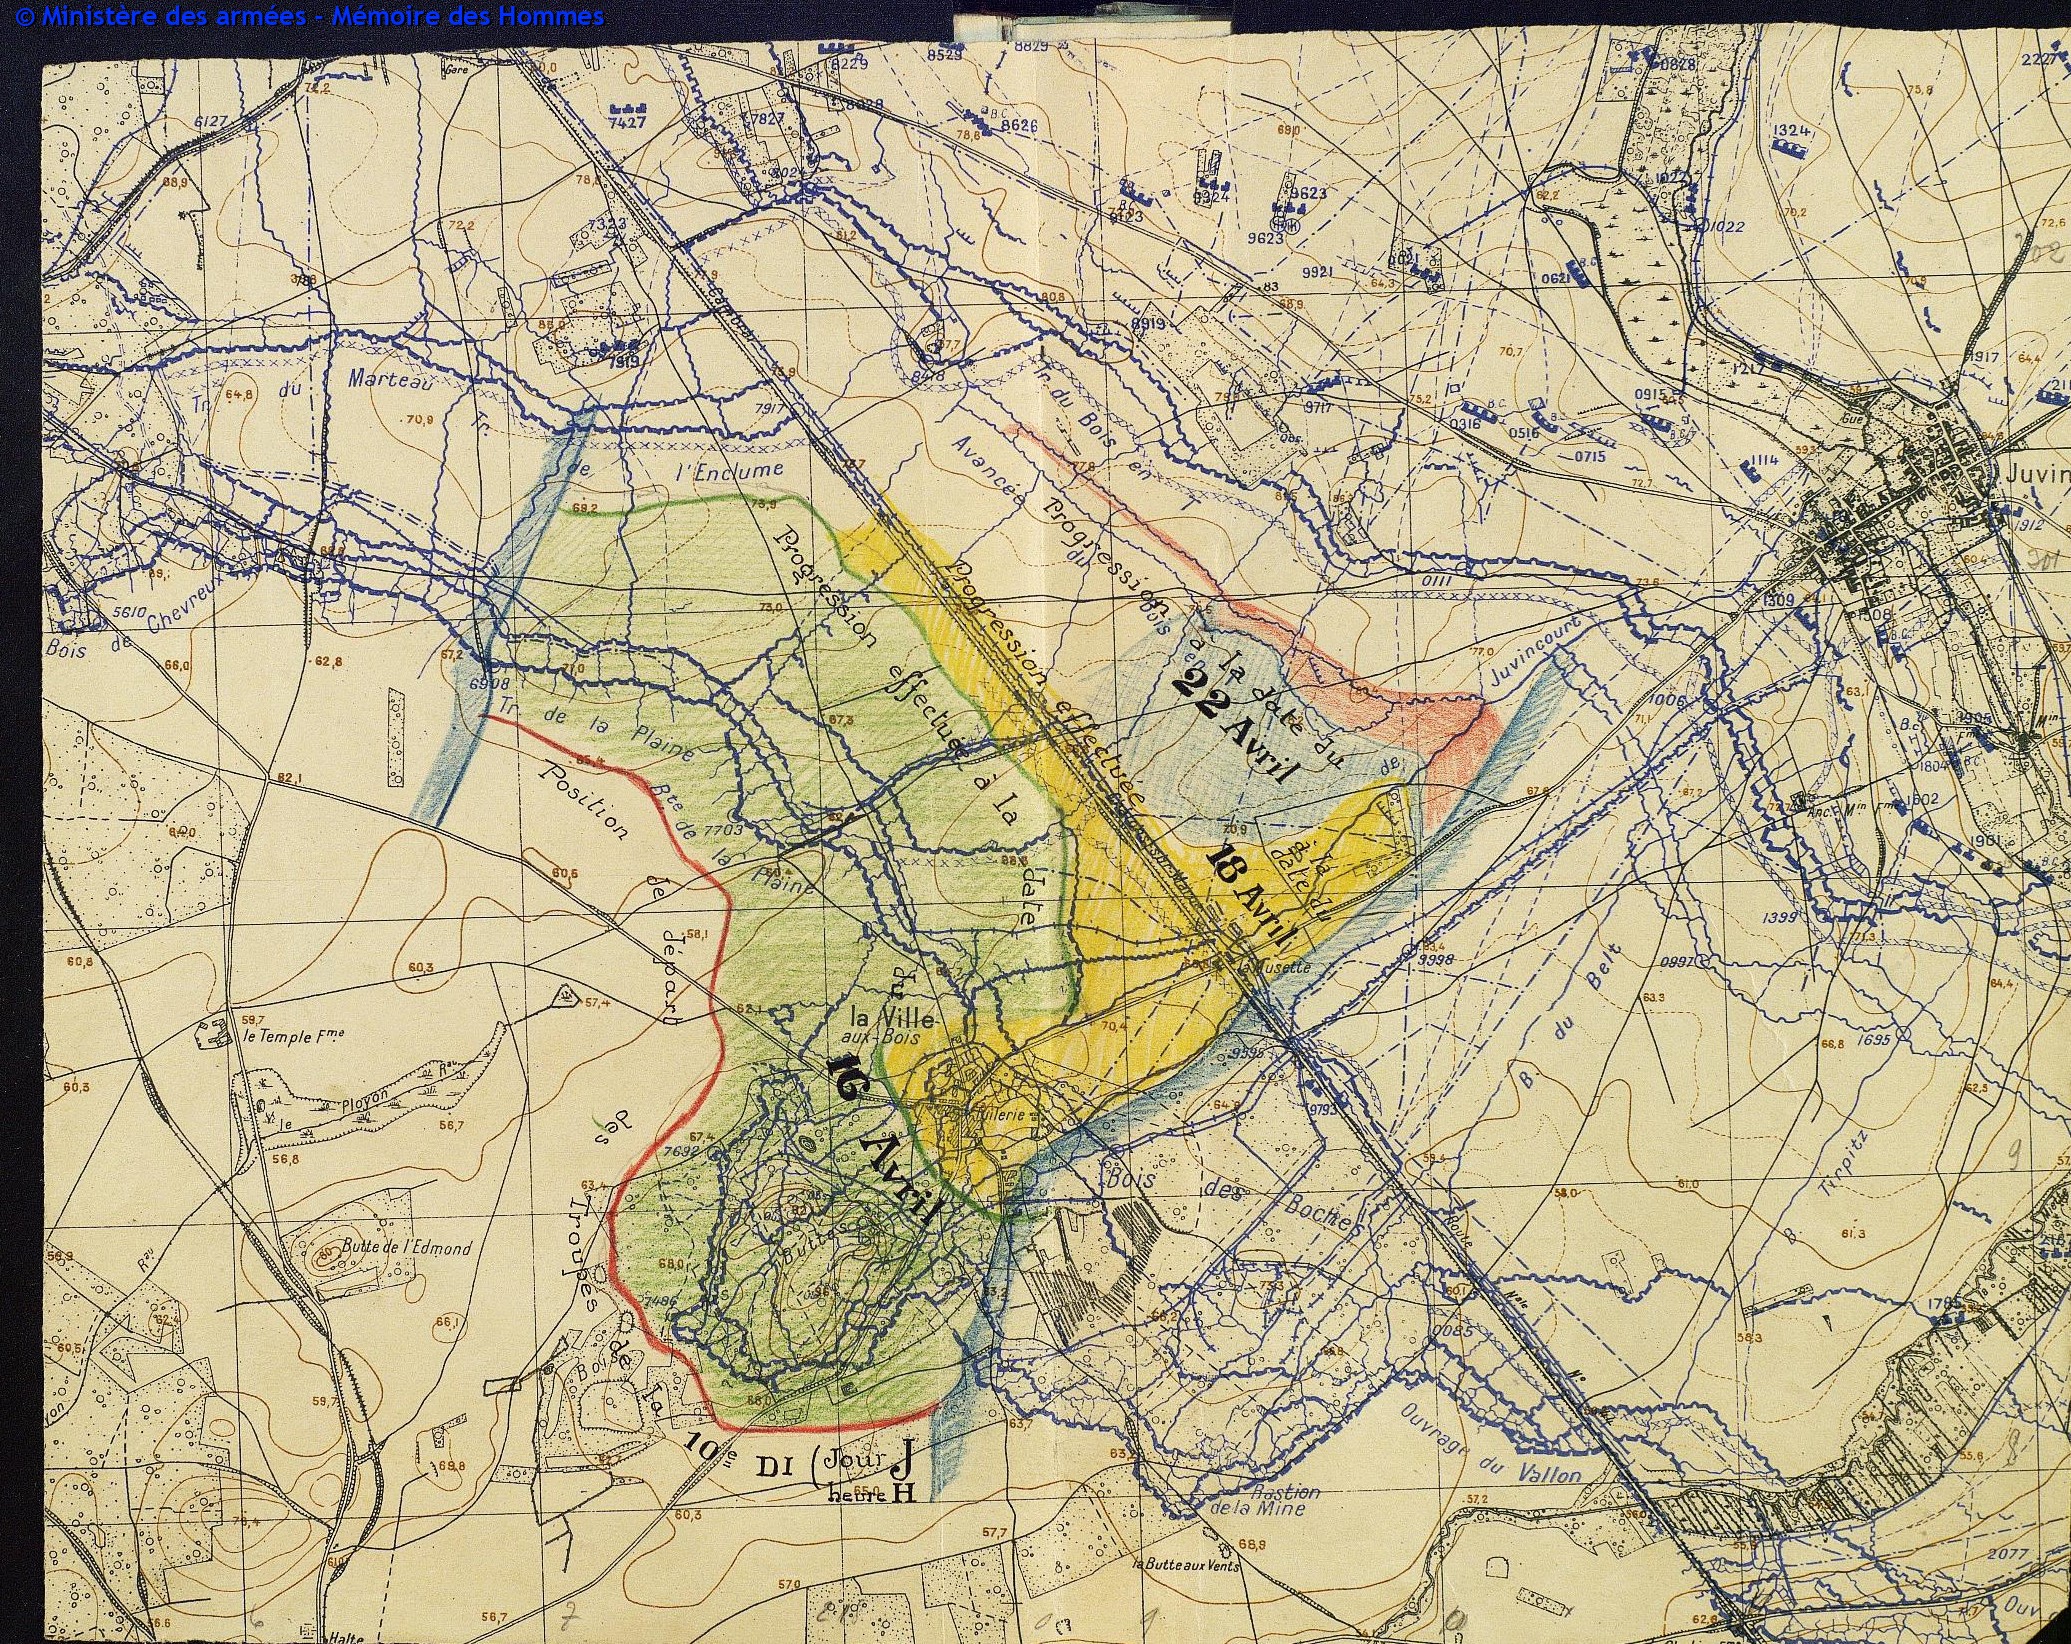 Tranchée de la Plaine - La-Ville-aux-Bois - 16 avril 1917